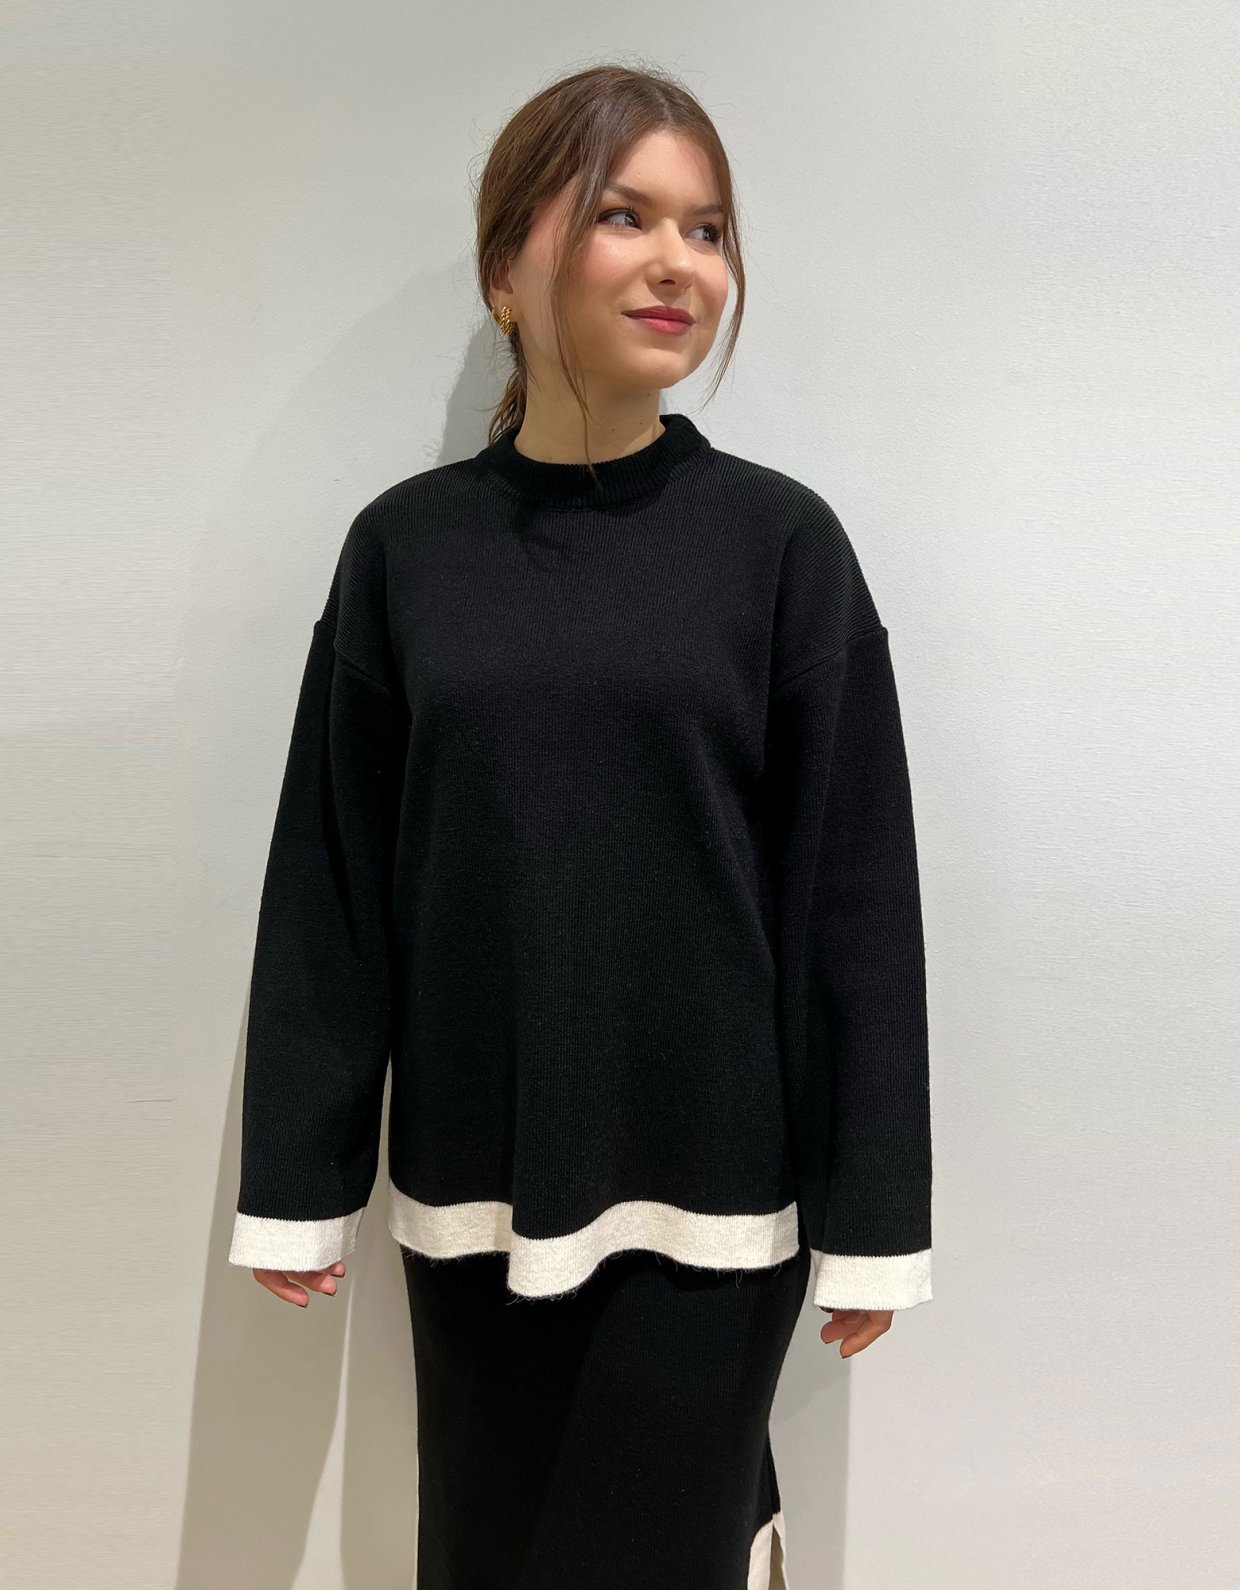 Combos Knitwear Stripped sweater black stripes ecru